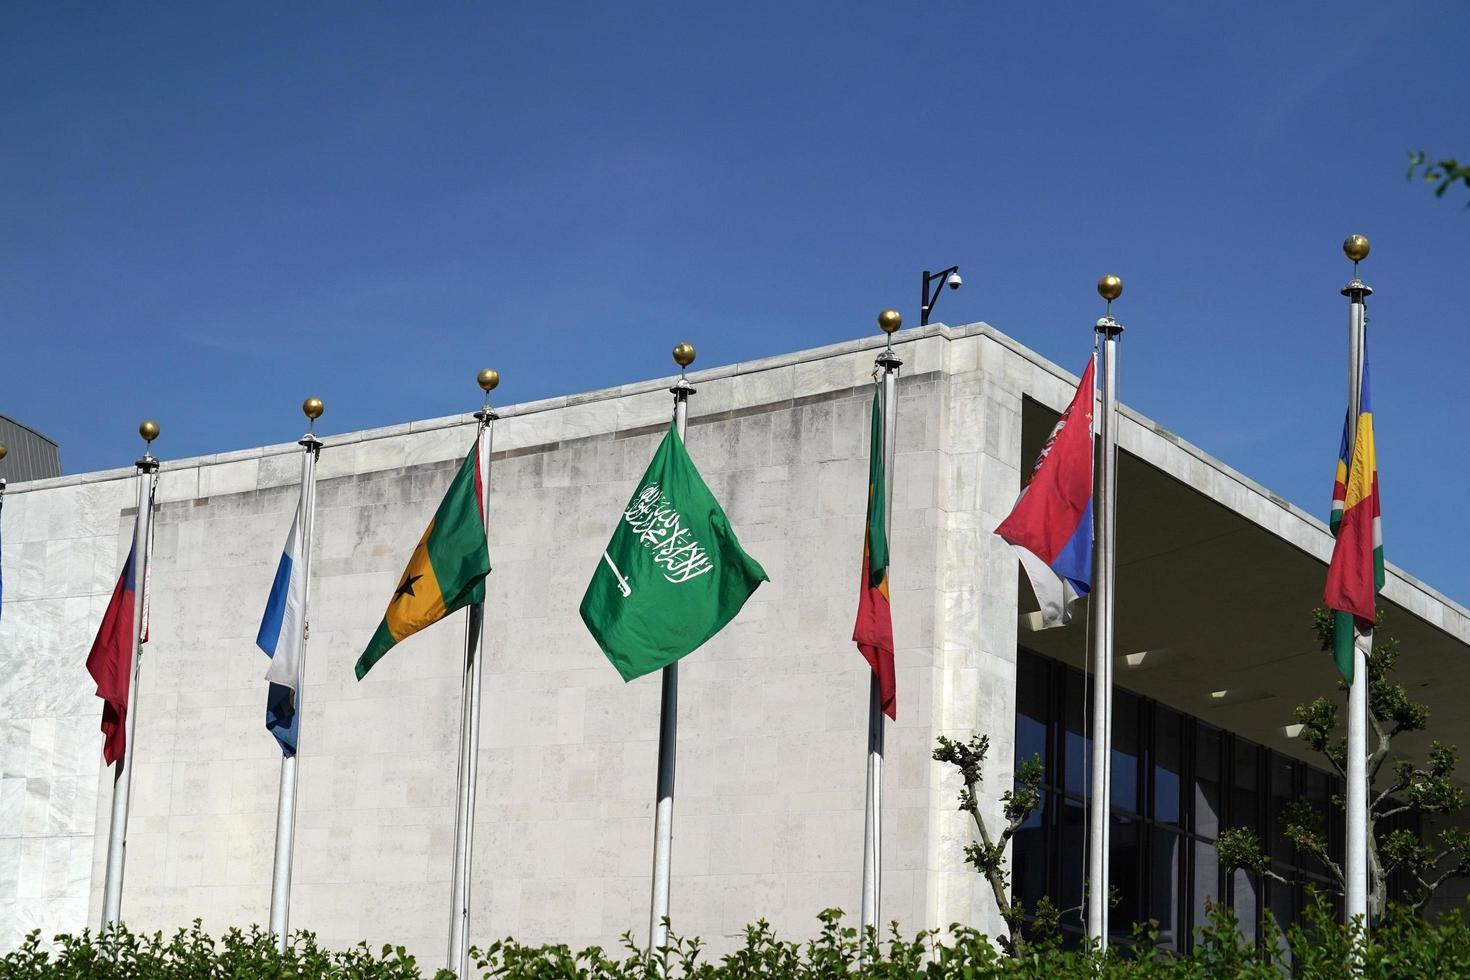 bandiere al di fuori unito nazioni edificio nel nuovo York, 2022 foto